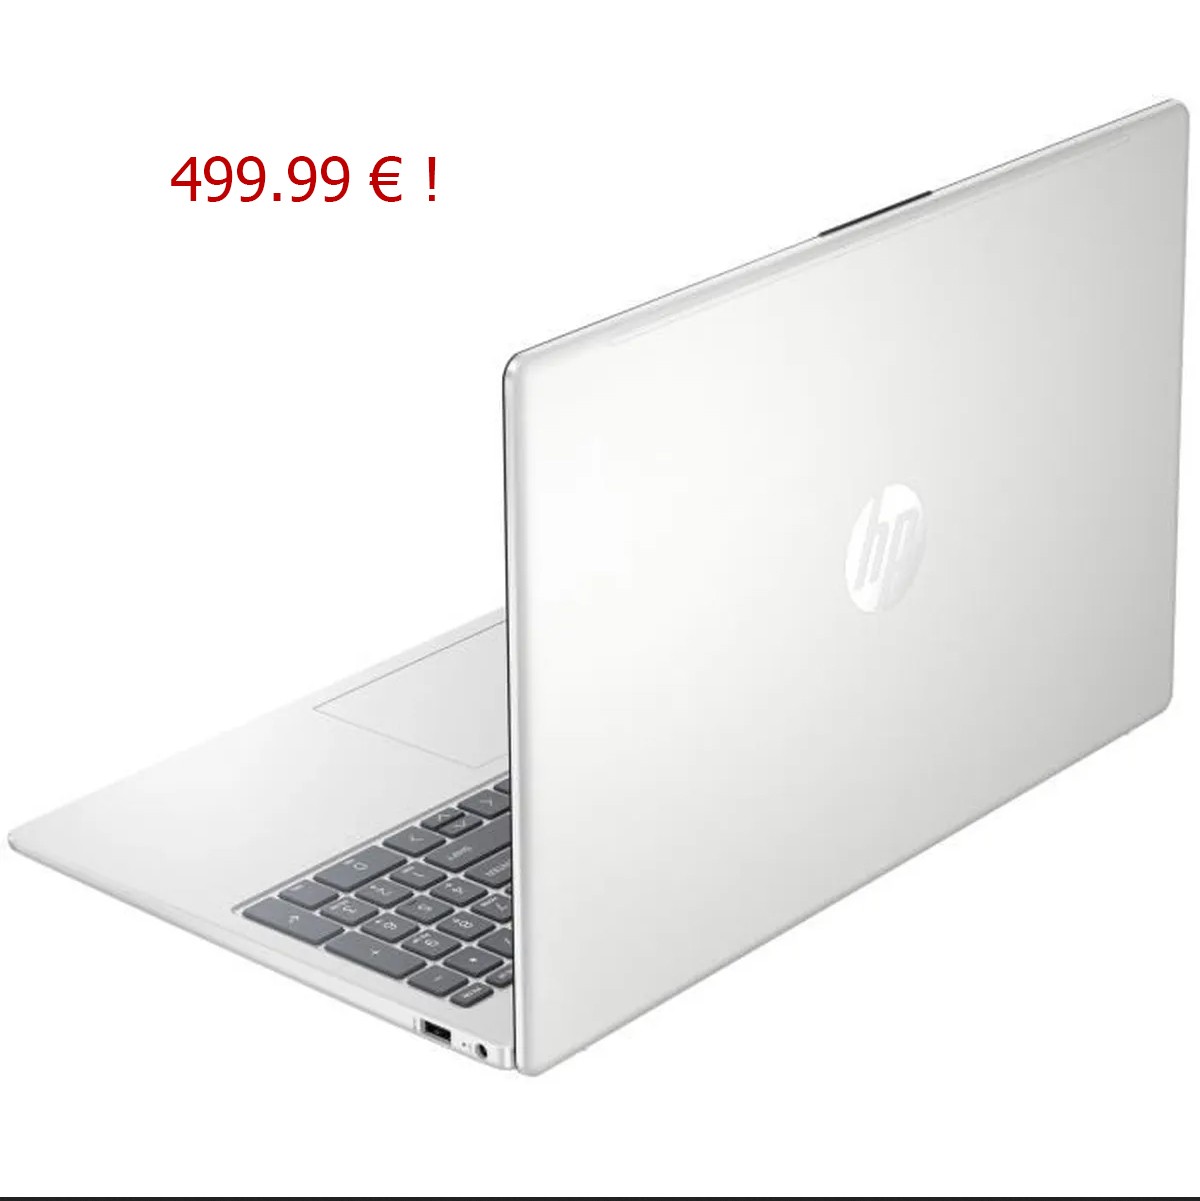 Un sympathique ordinateur portable 15.6 pouces HP à moins de 500 euros